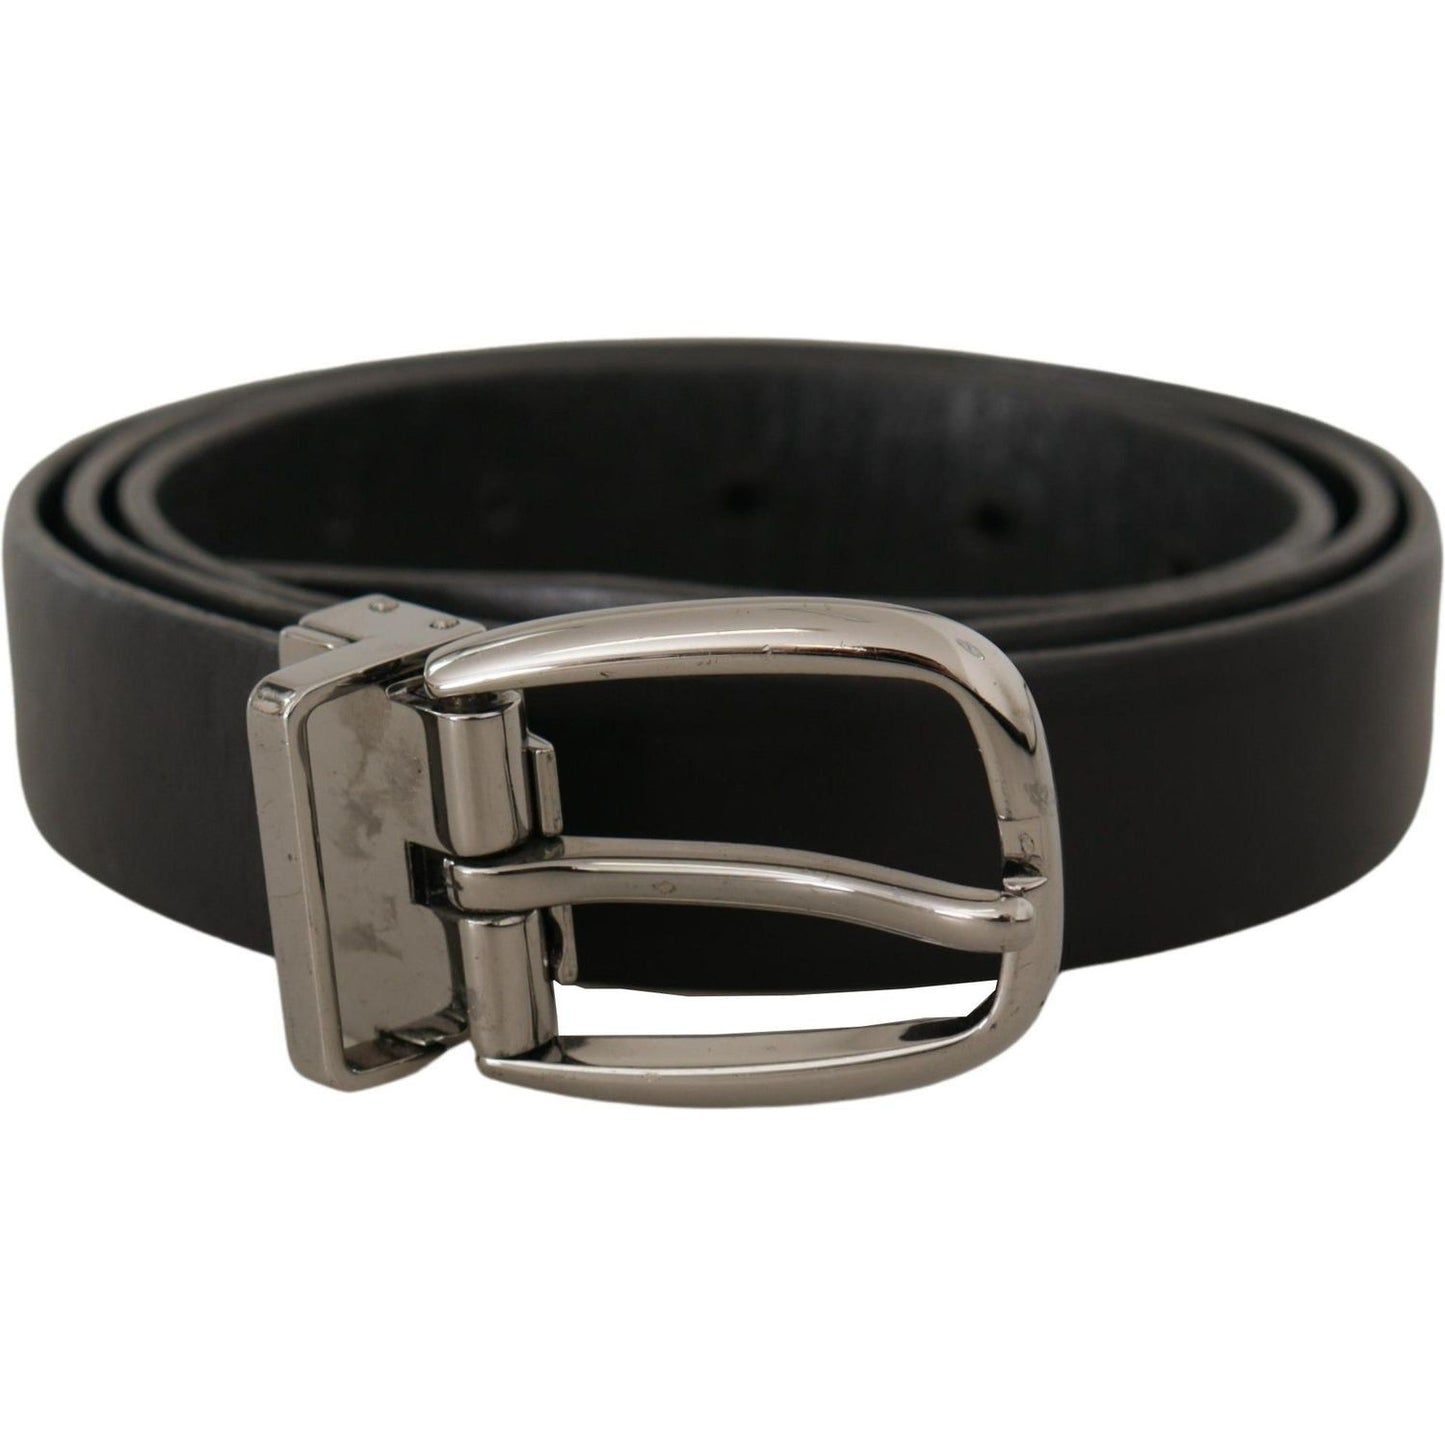 Elegant Black Leather Designer Belt